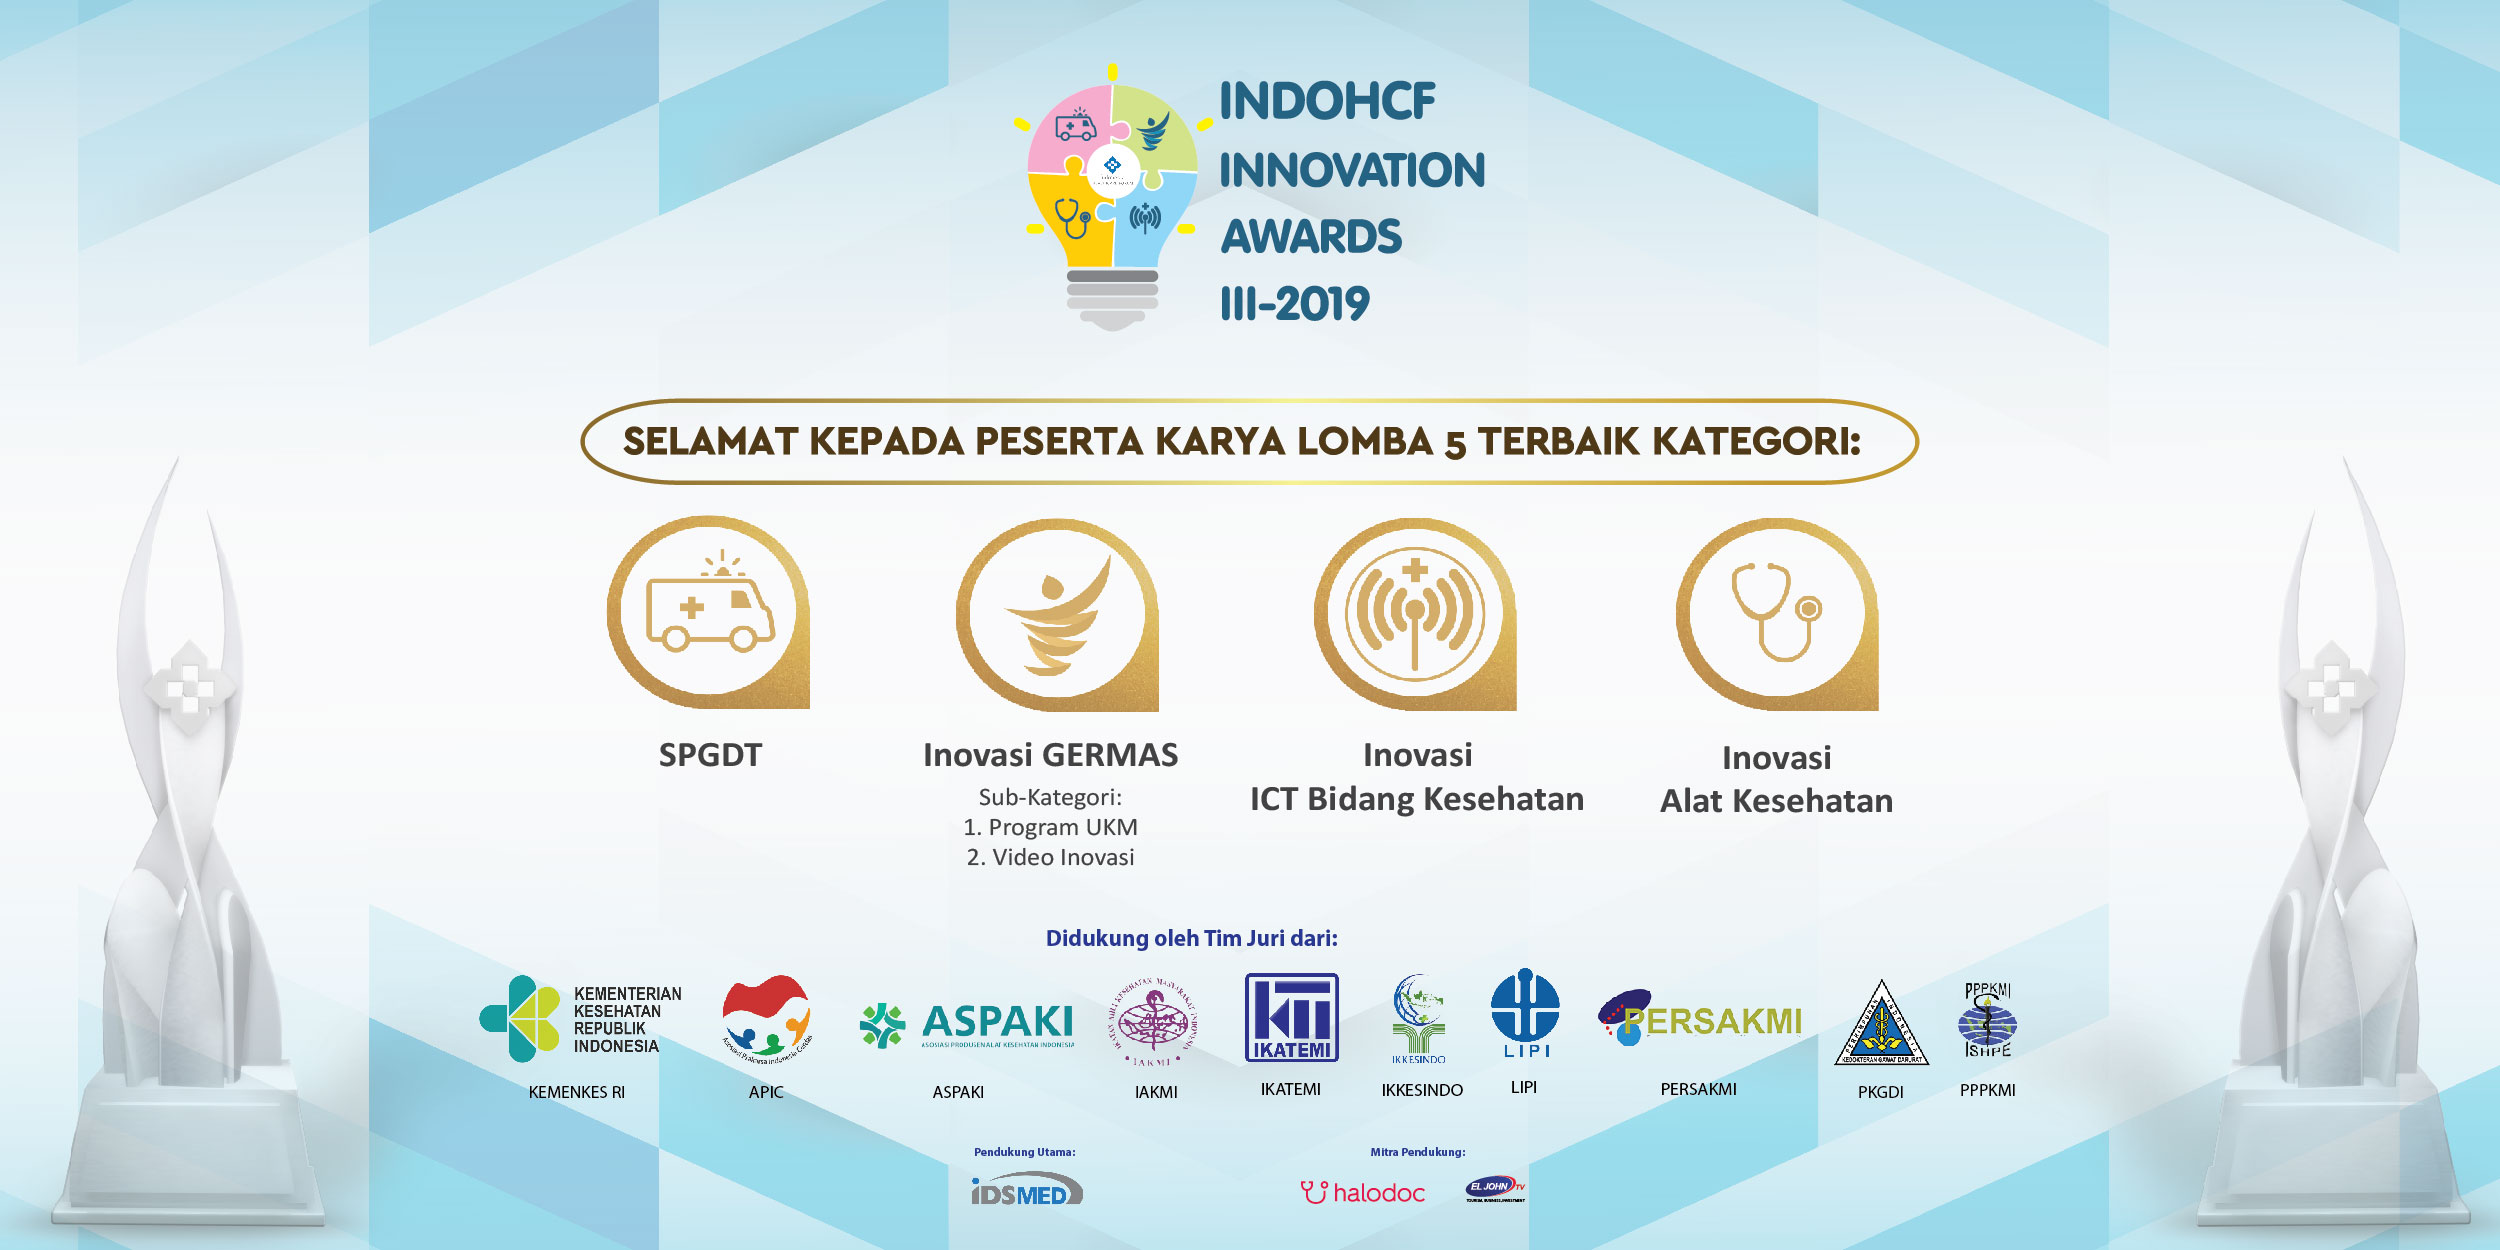 Inilah Nominasi Lima Terbaik Yang Berhak Melaju Ke Final  IndoHCF Innovation Awards III-2019